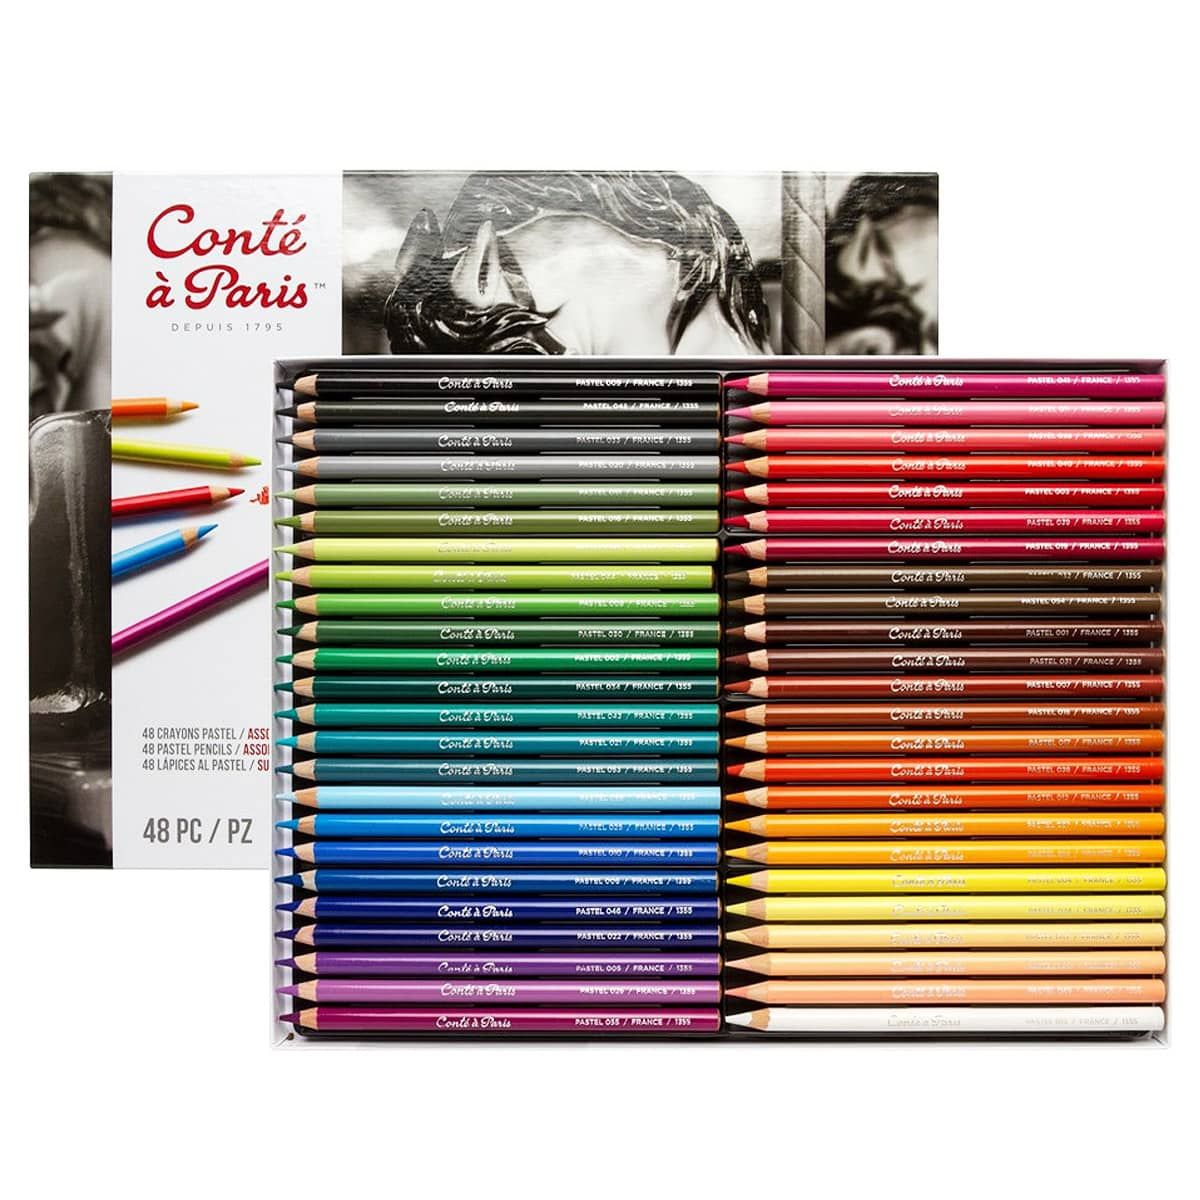 Conte Crayon Set, 18-Color Box Set